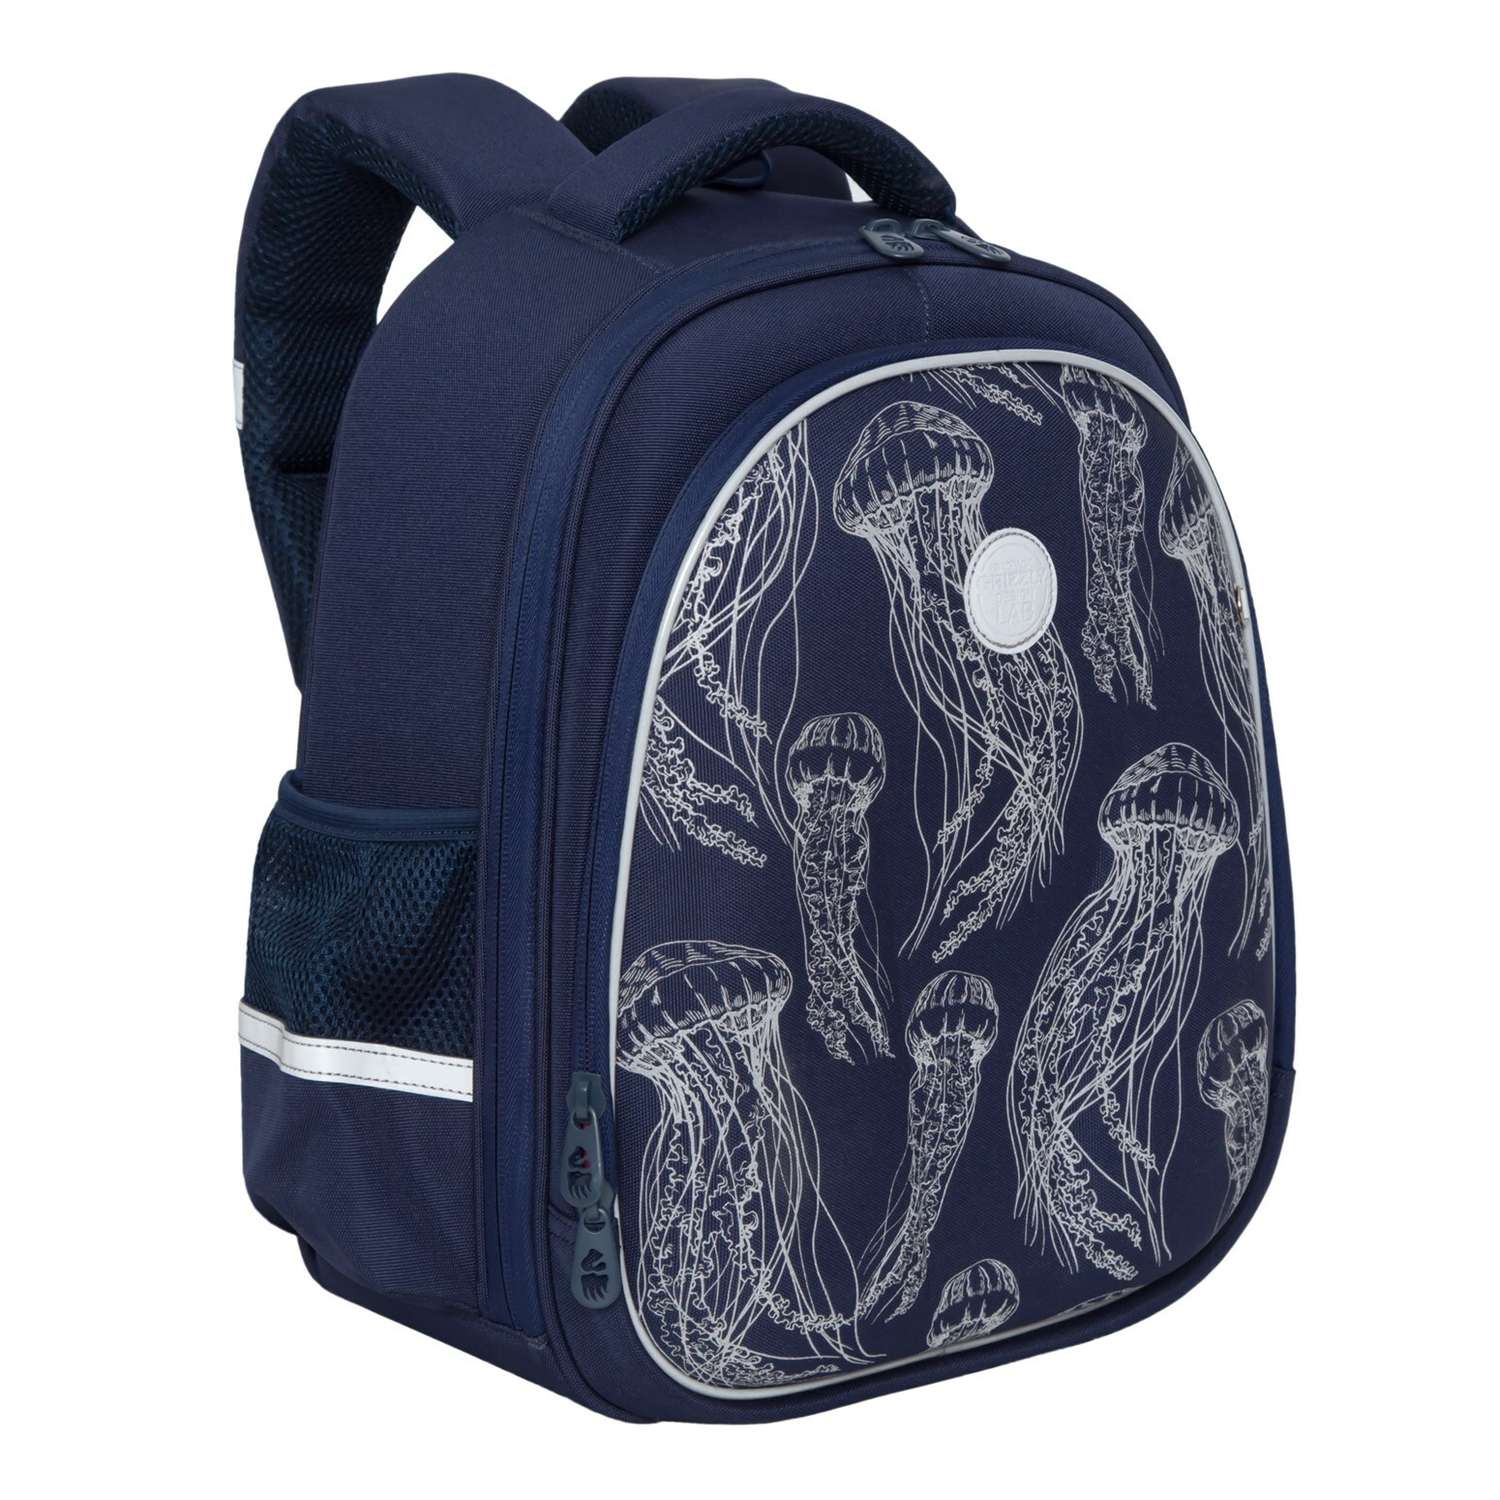 Рюкзак школьный Grizzly Медузы Темно-синий RAz-086-9/2 - фото 2